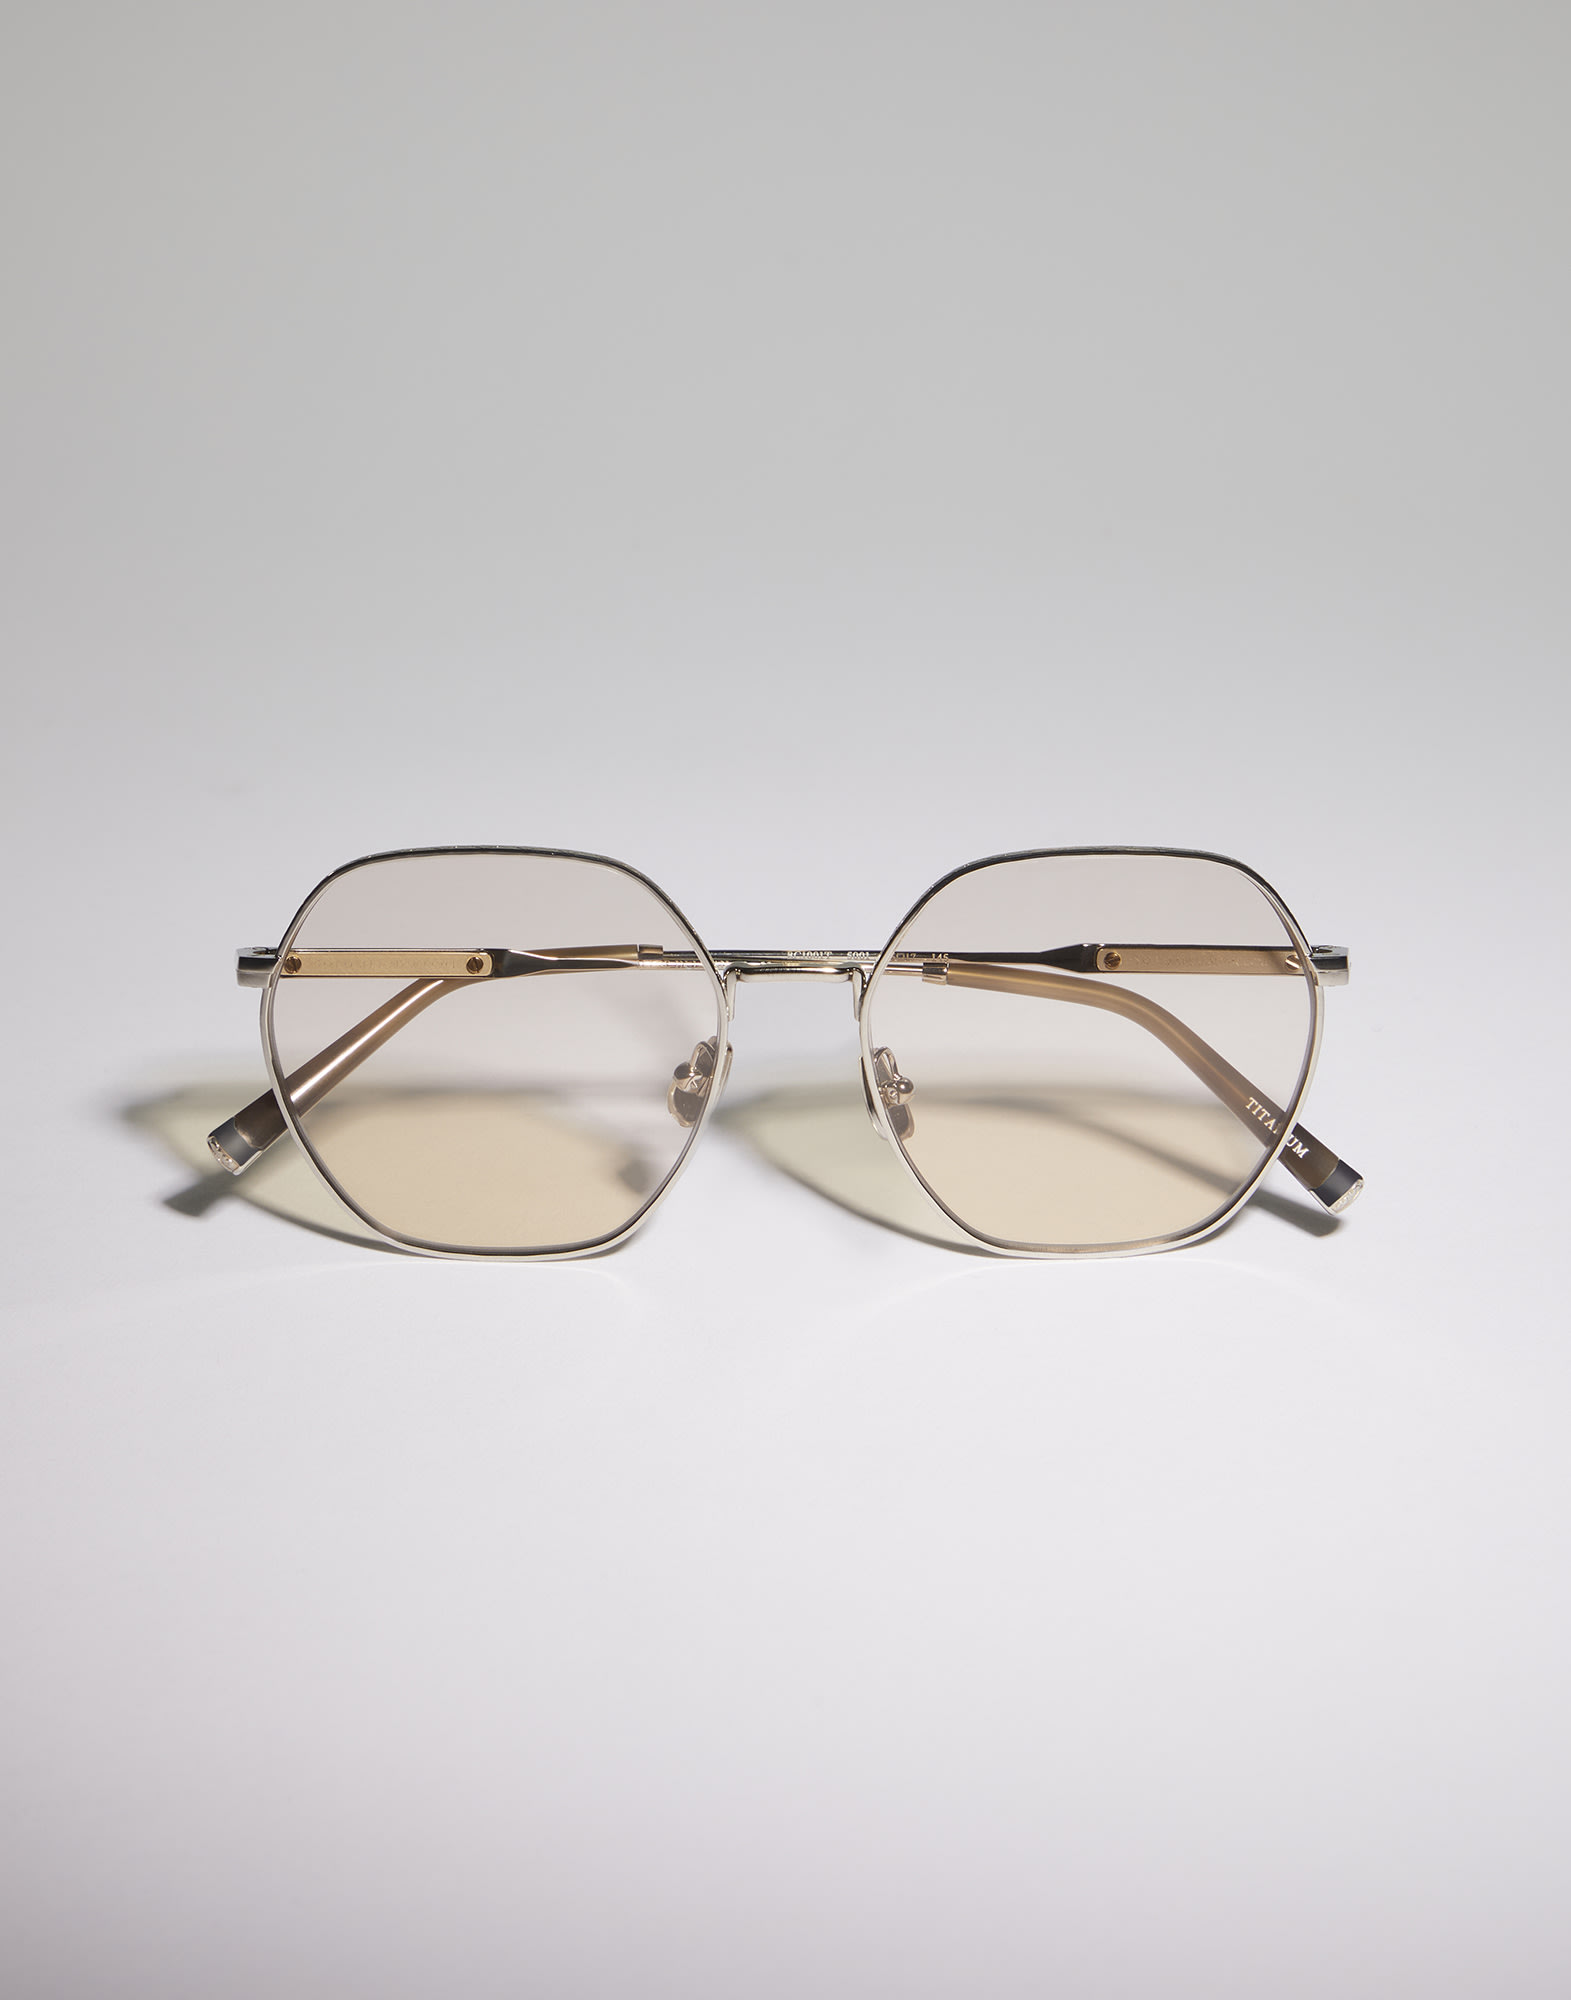 Geometric titanium glasses